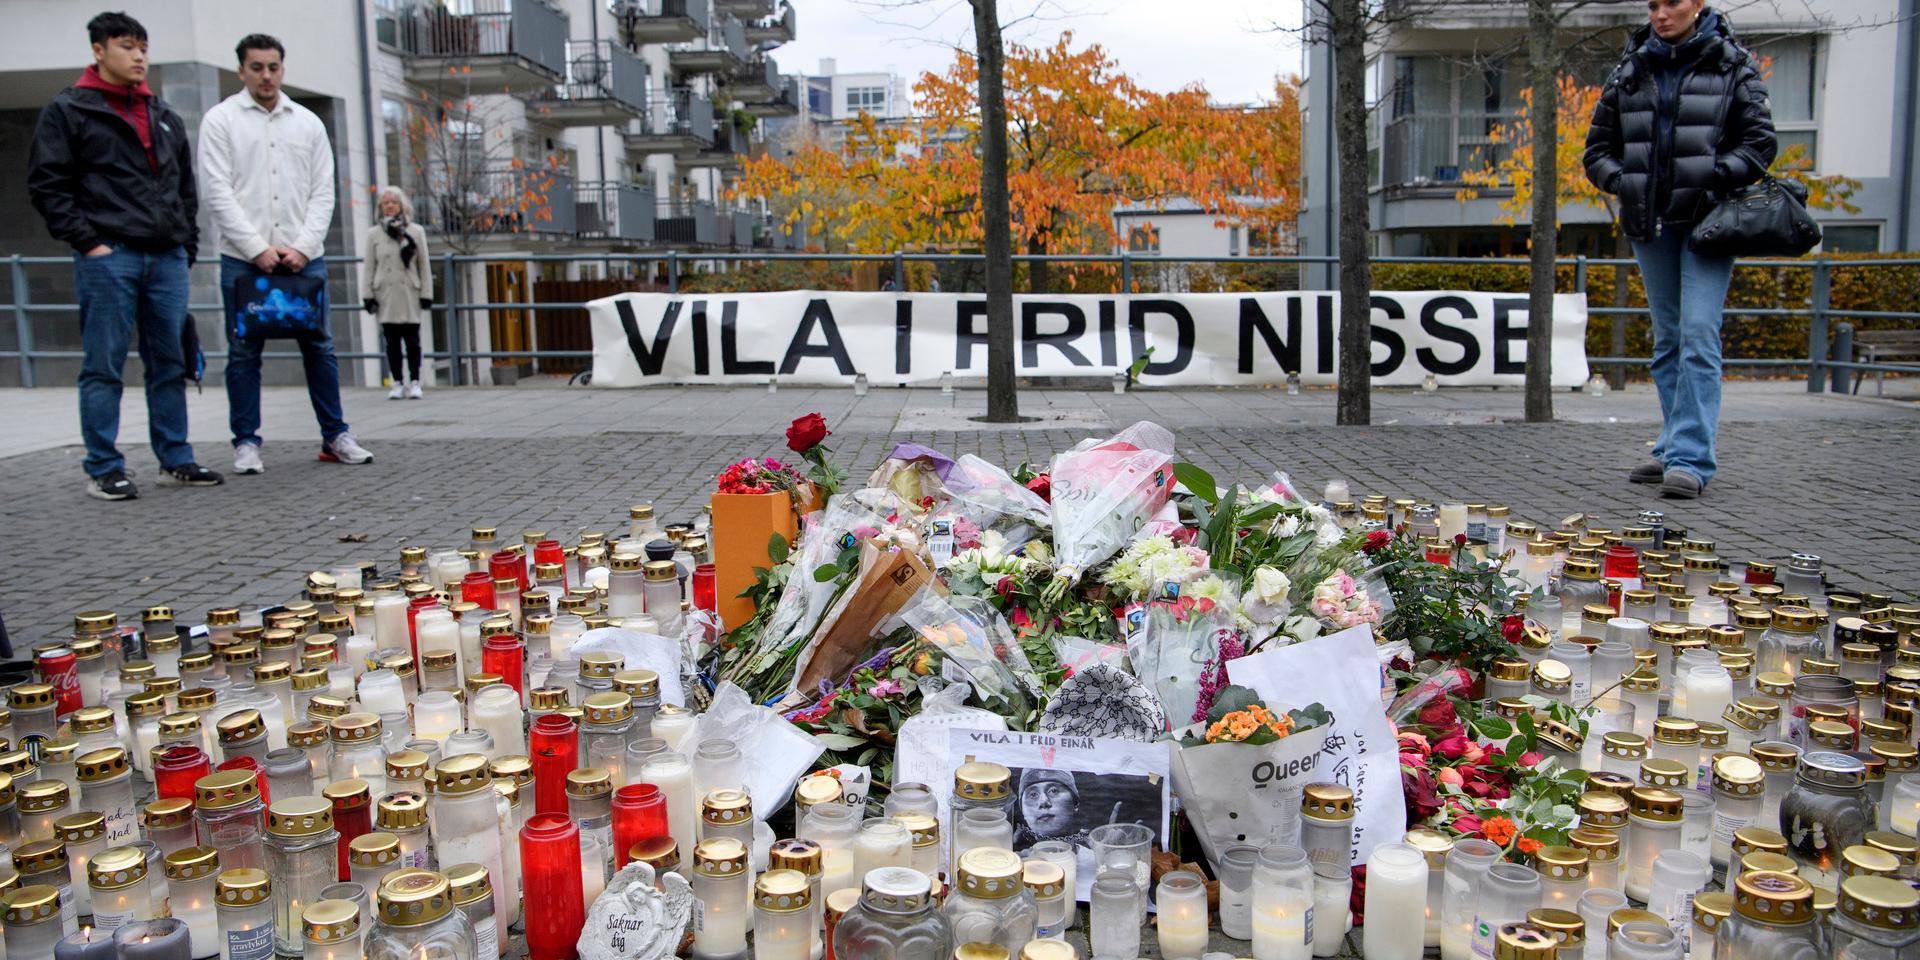 Blommor och ljus i närheten av platsen i Hammarby sjöstad i Stockholm där Nils Grönberg, mer känd som rapparen Einár, sköts till döds för en vecka sedan.